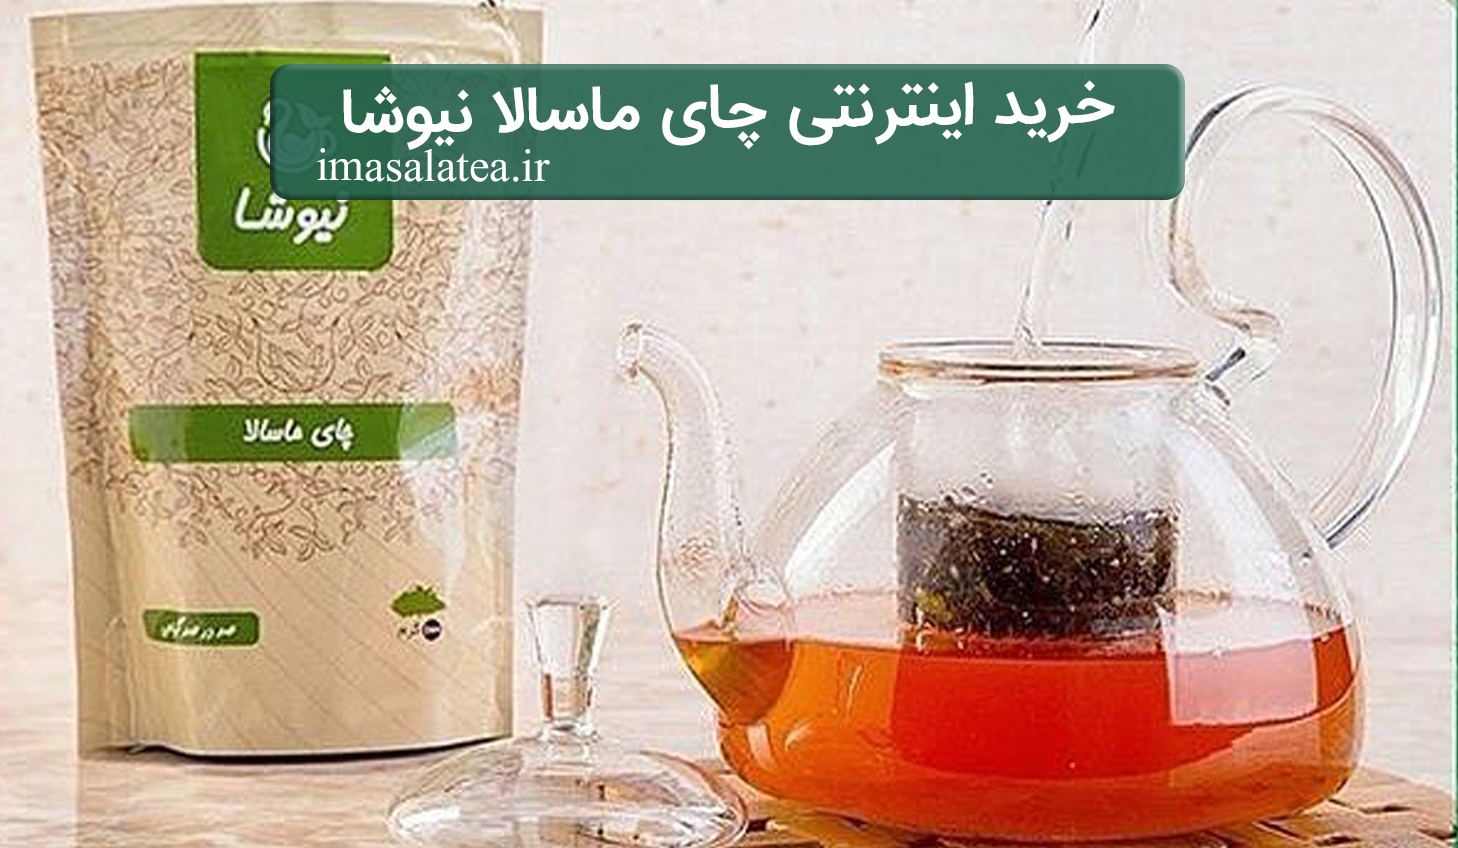 خرید اینترنتی چای ماسالا نیوشا